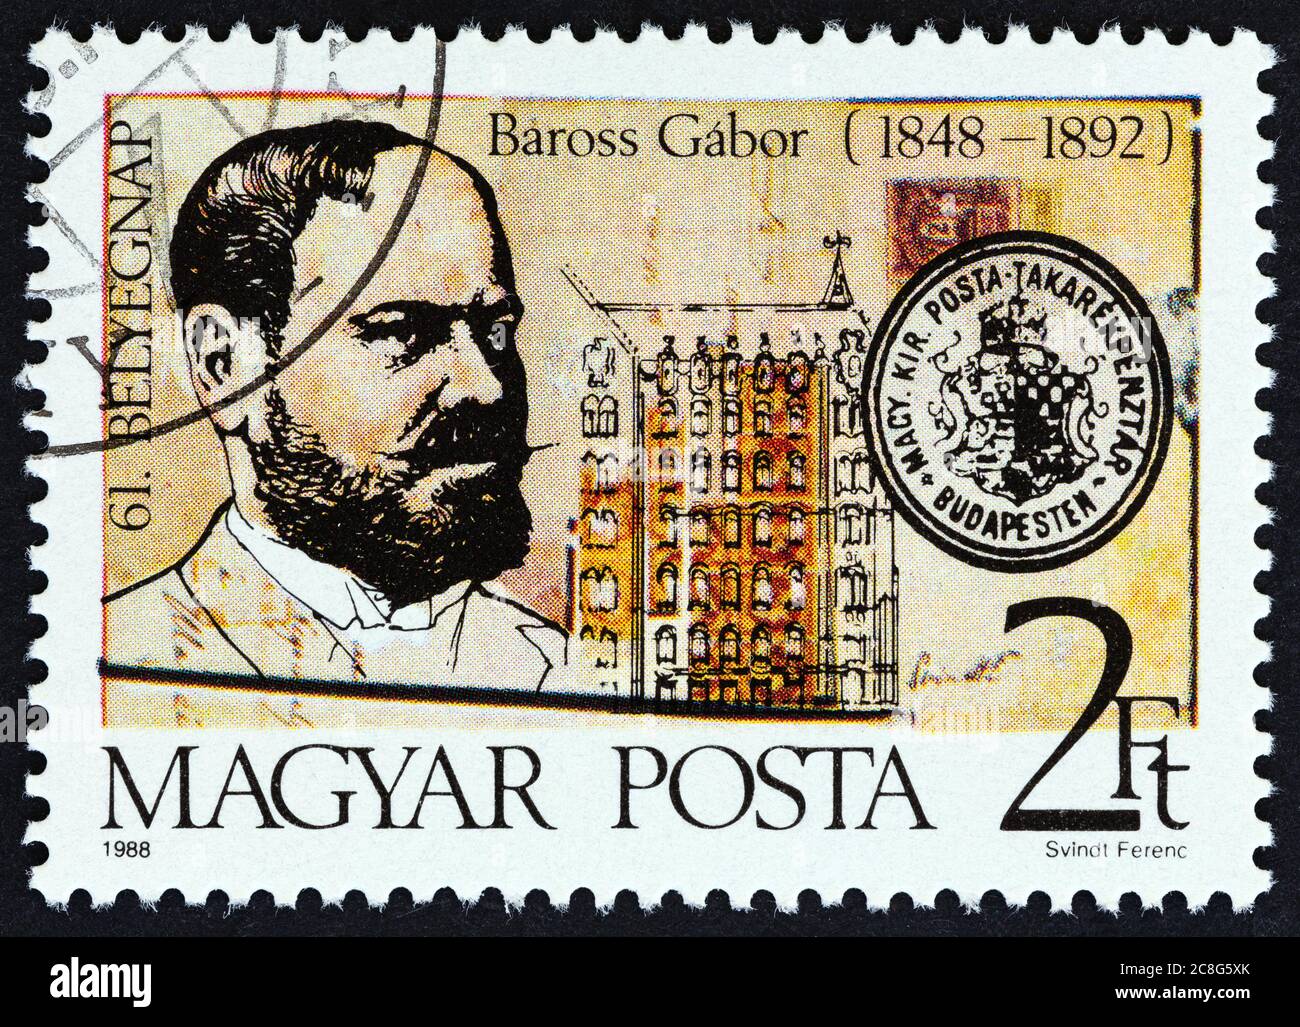 UNGHERIA - CIRCA 1988: Un francobollo stampato in Ungheria rilasciato per il 140esimo anniversario di nascita di Gabor Baross mostra Baross e Postal Savings Bank, Budapest. Foto Stock